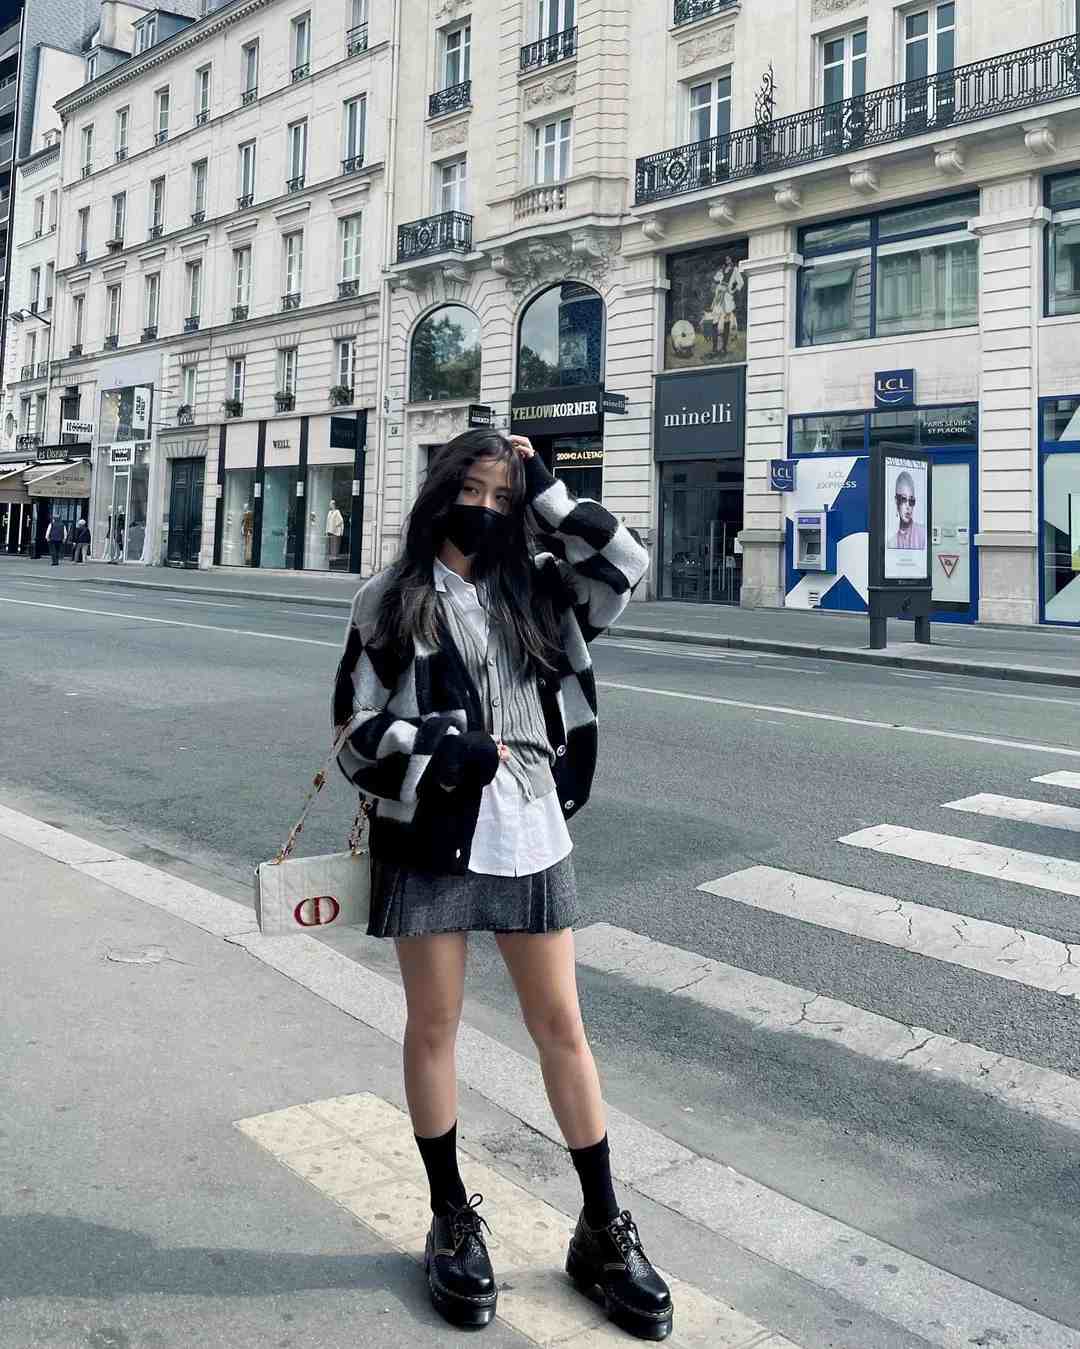 Jisoo dạo chơi trên đường phố Paris với phong cách nữ sinh năng động. Cô mặc áo len dáng cardigan. Cách phối màu từ trắng, đen, xám giúp nữ ca sĩ có tổng thể phong cách hài hòa. Ảnh: Naver.